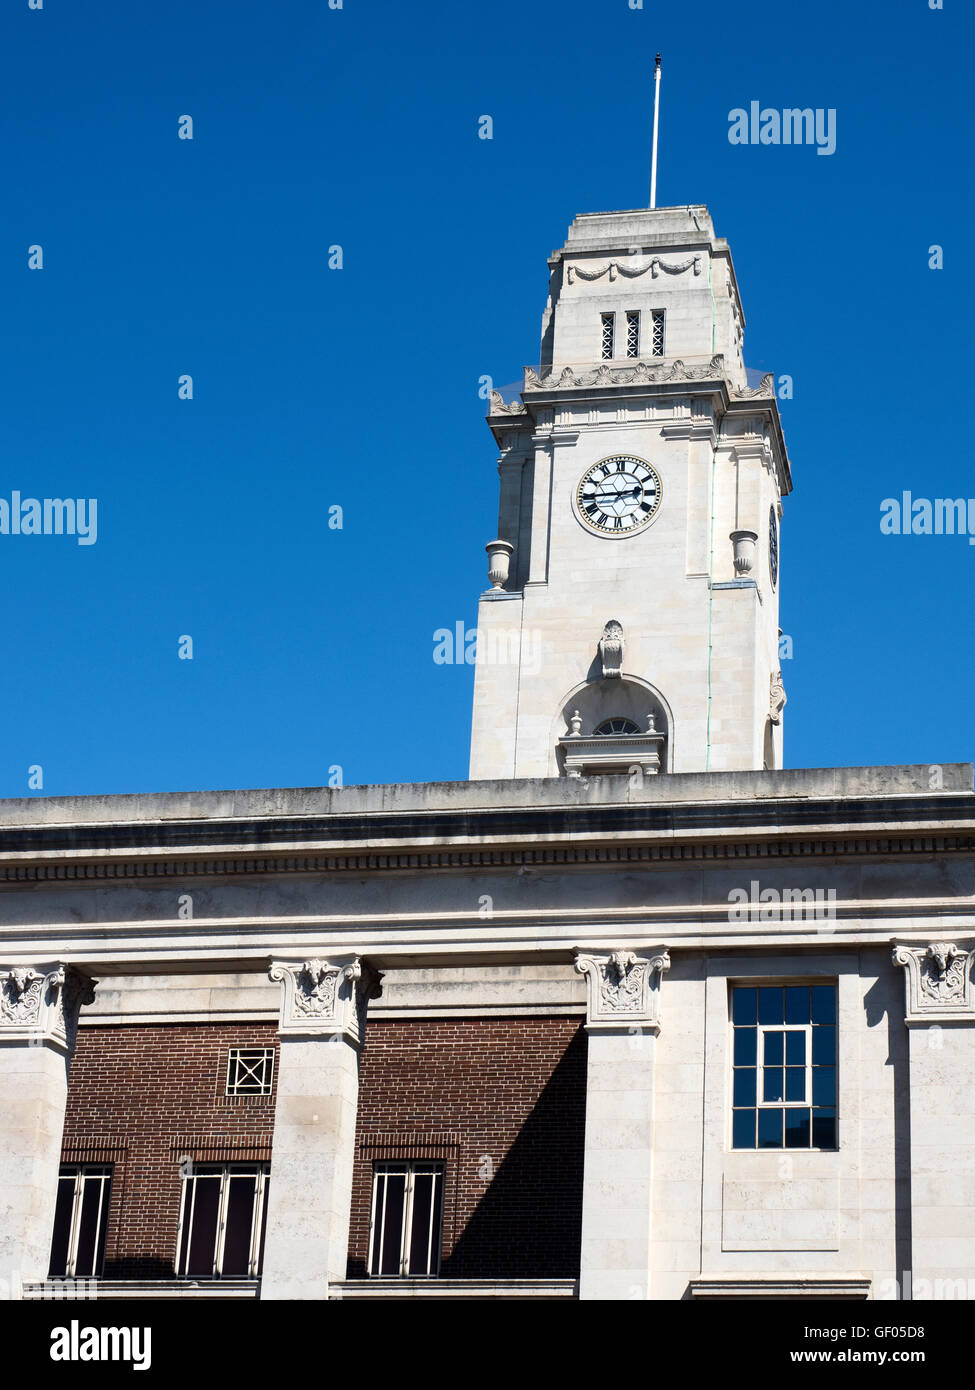 Tour de l'horloge à l'Hôtel de ville de Barnsley Barnsley South Yorkshire, Angleterre Banque D'Images